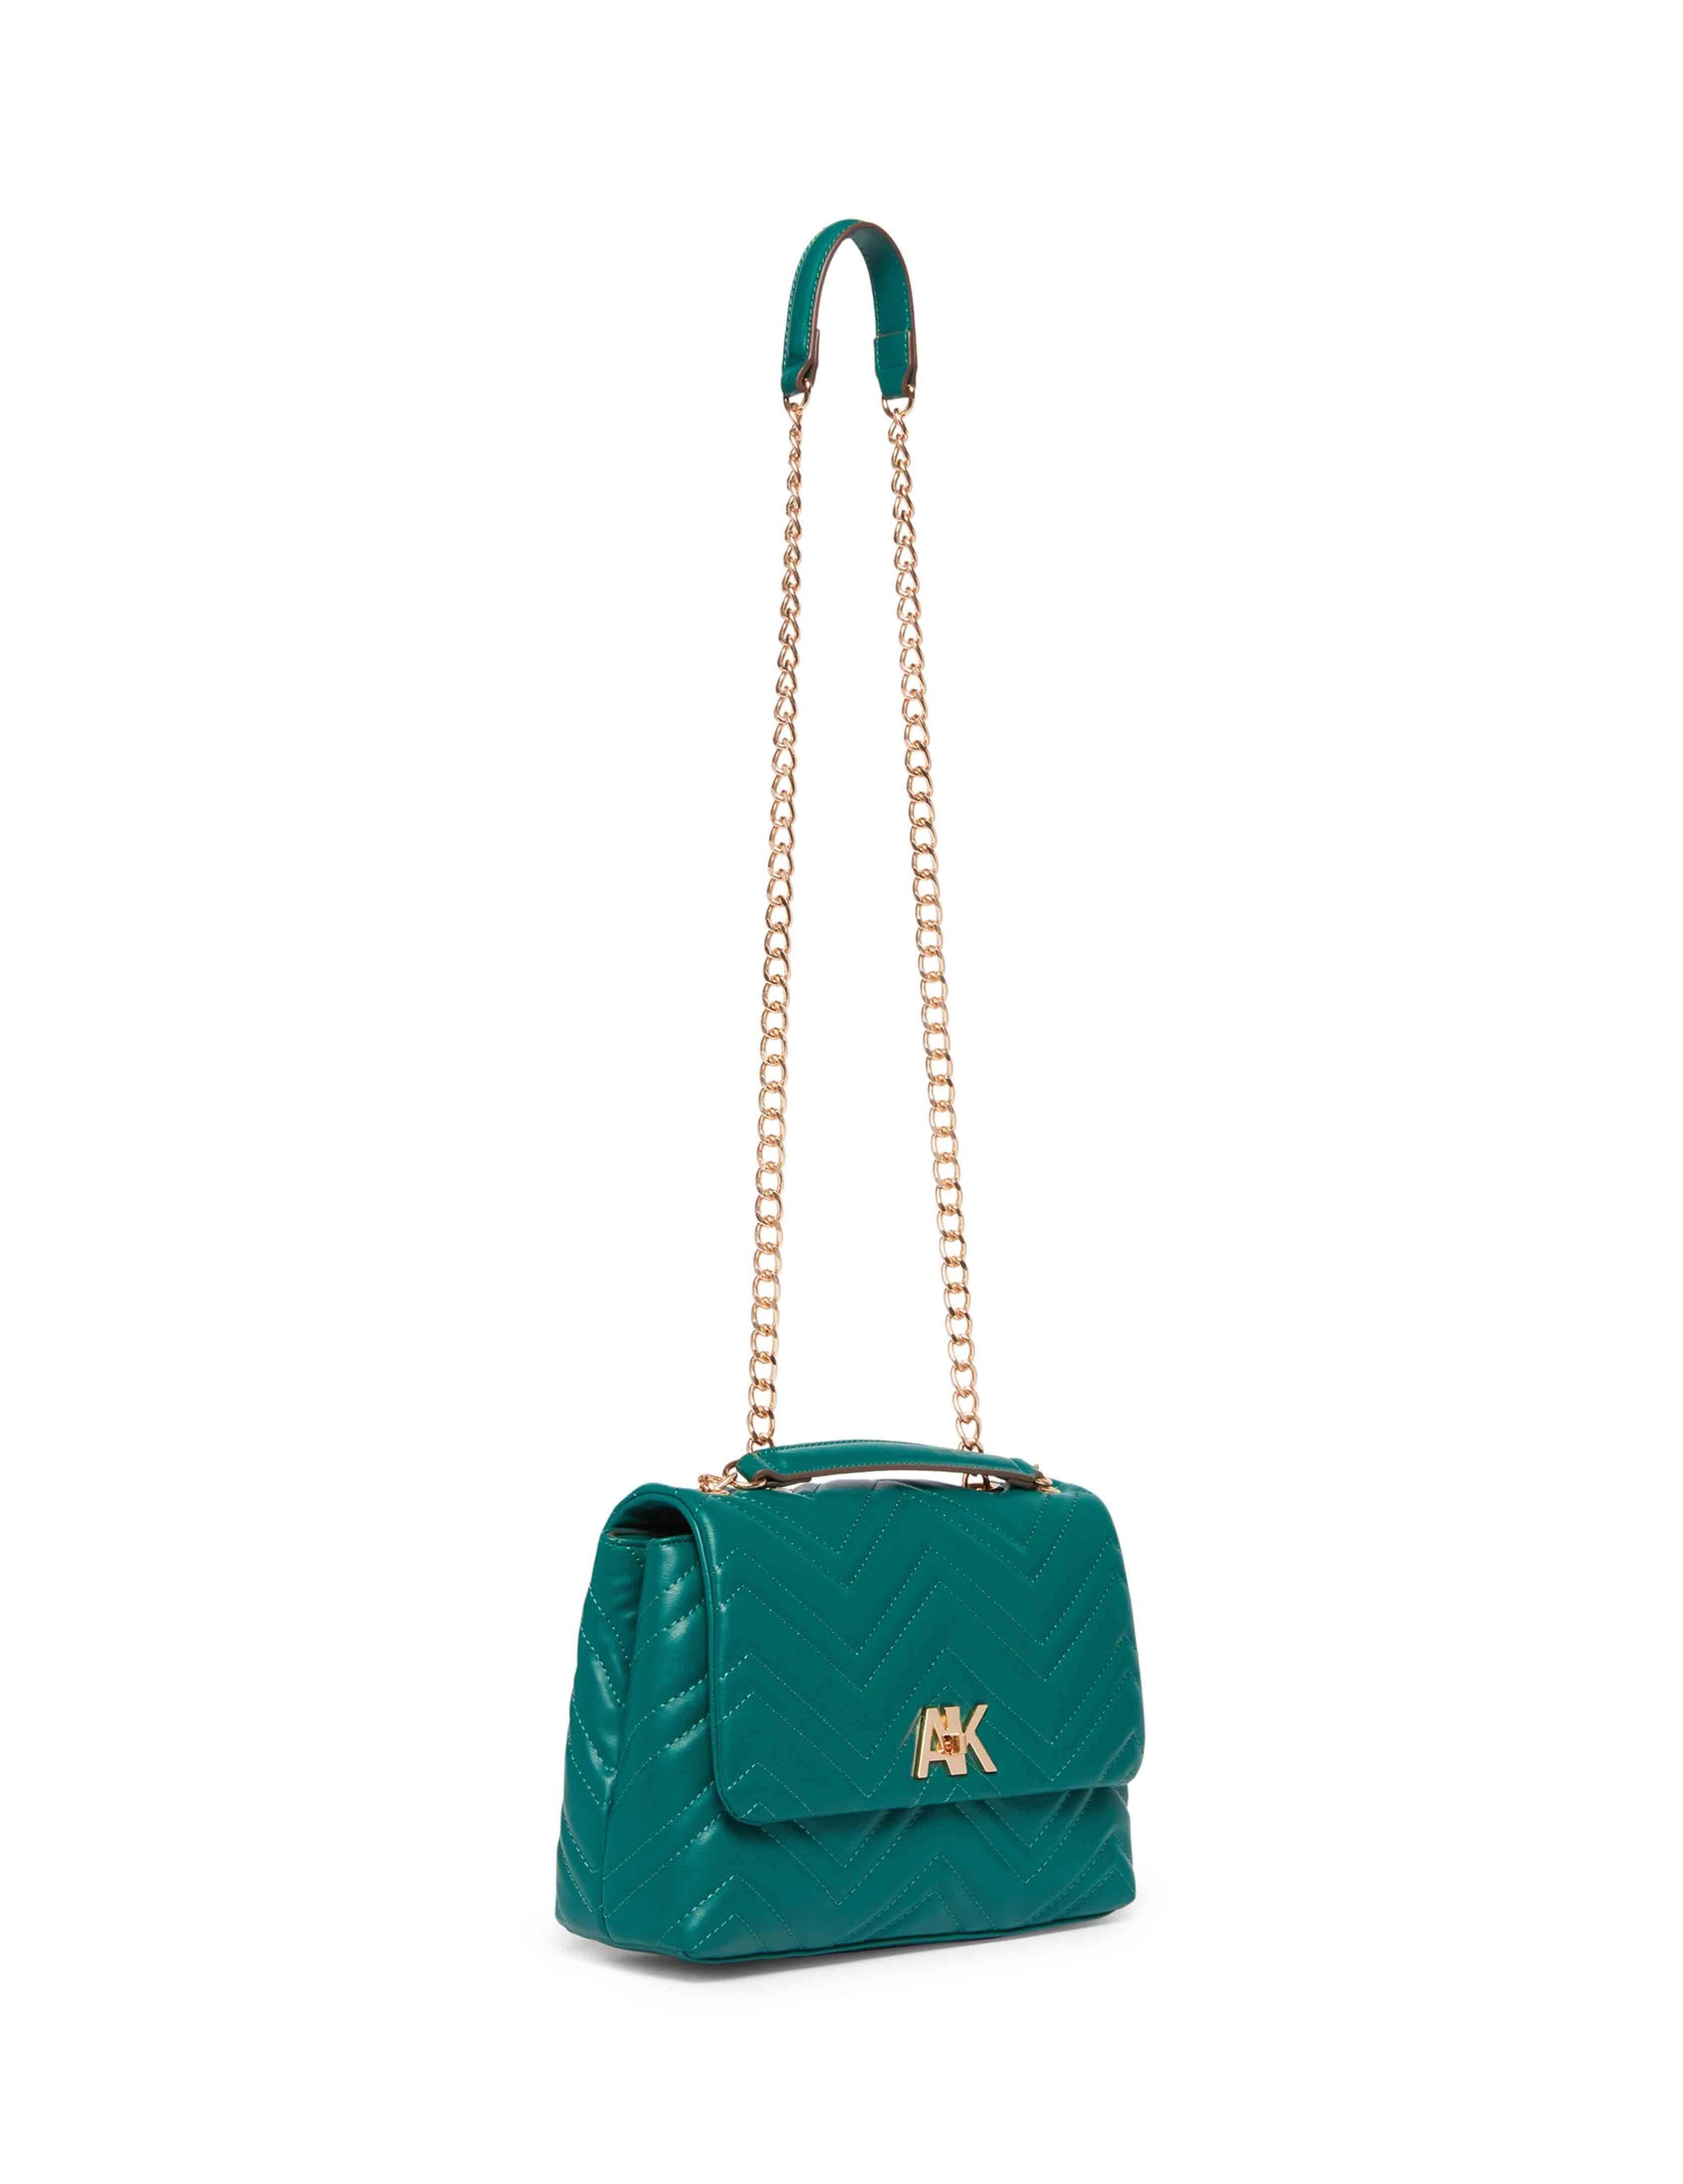 Elegant ANNE KLEIN Handbag